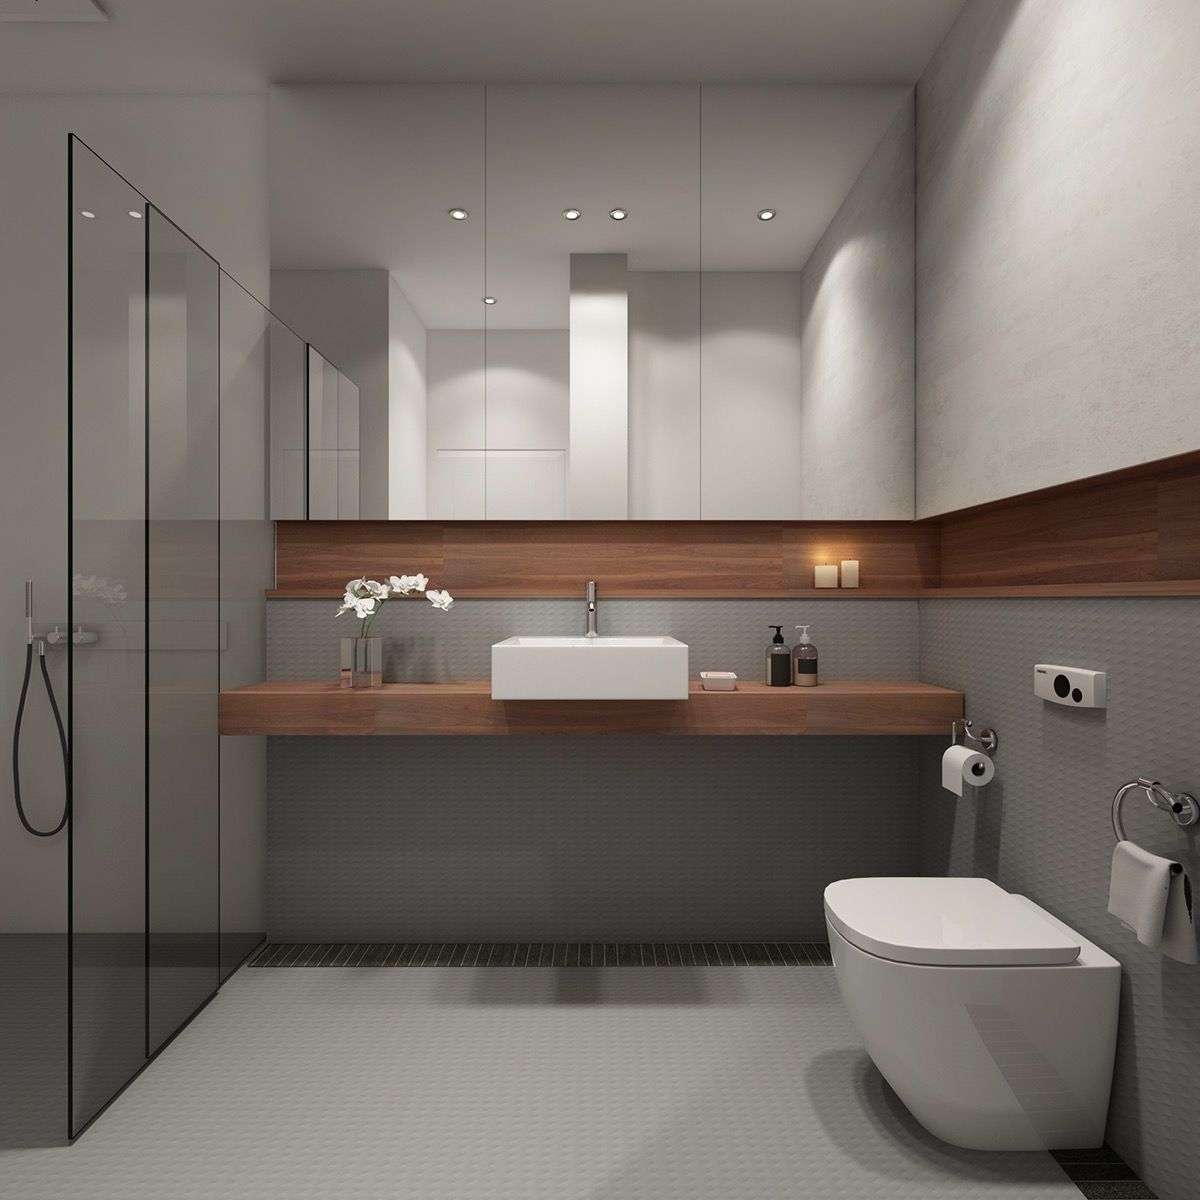 Badezimmer in Grau modern Holzplatte Spiegelschrank Duschkabine Designideen